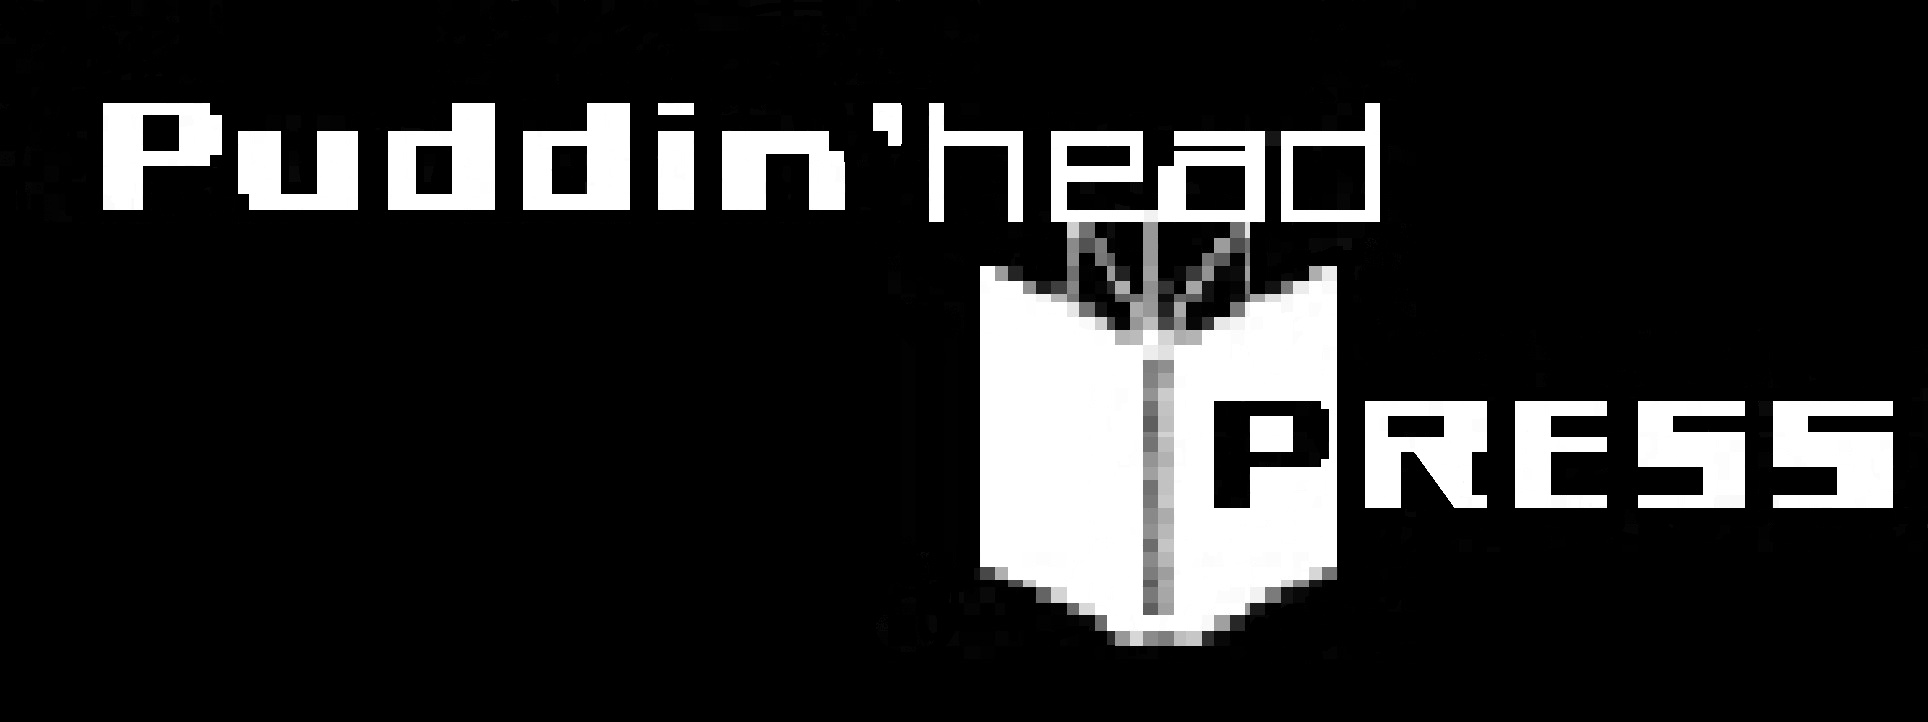 Puddin'head Press